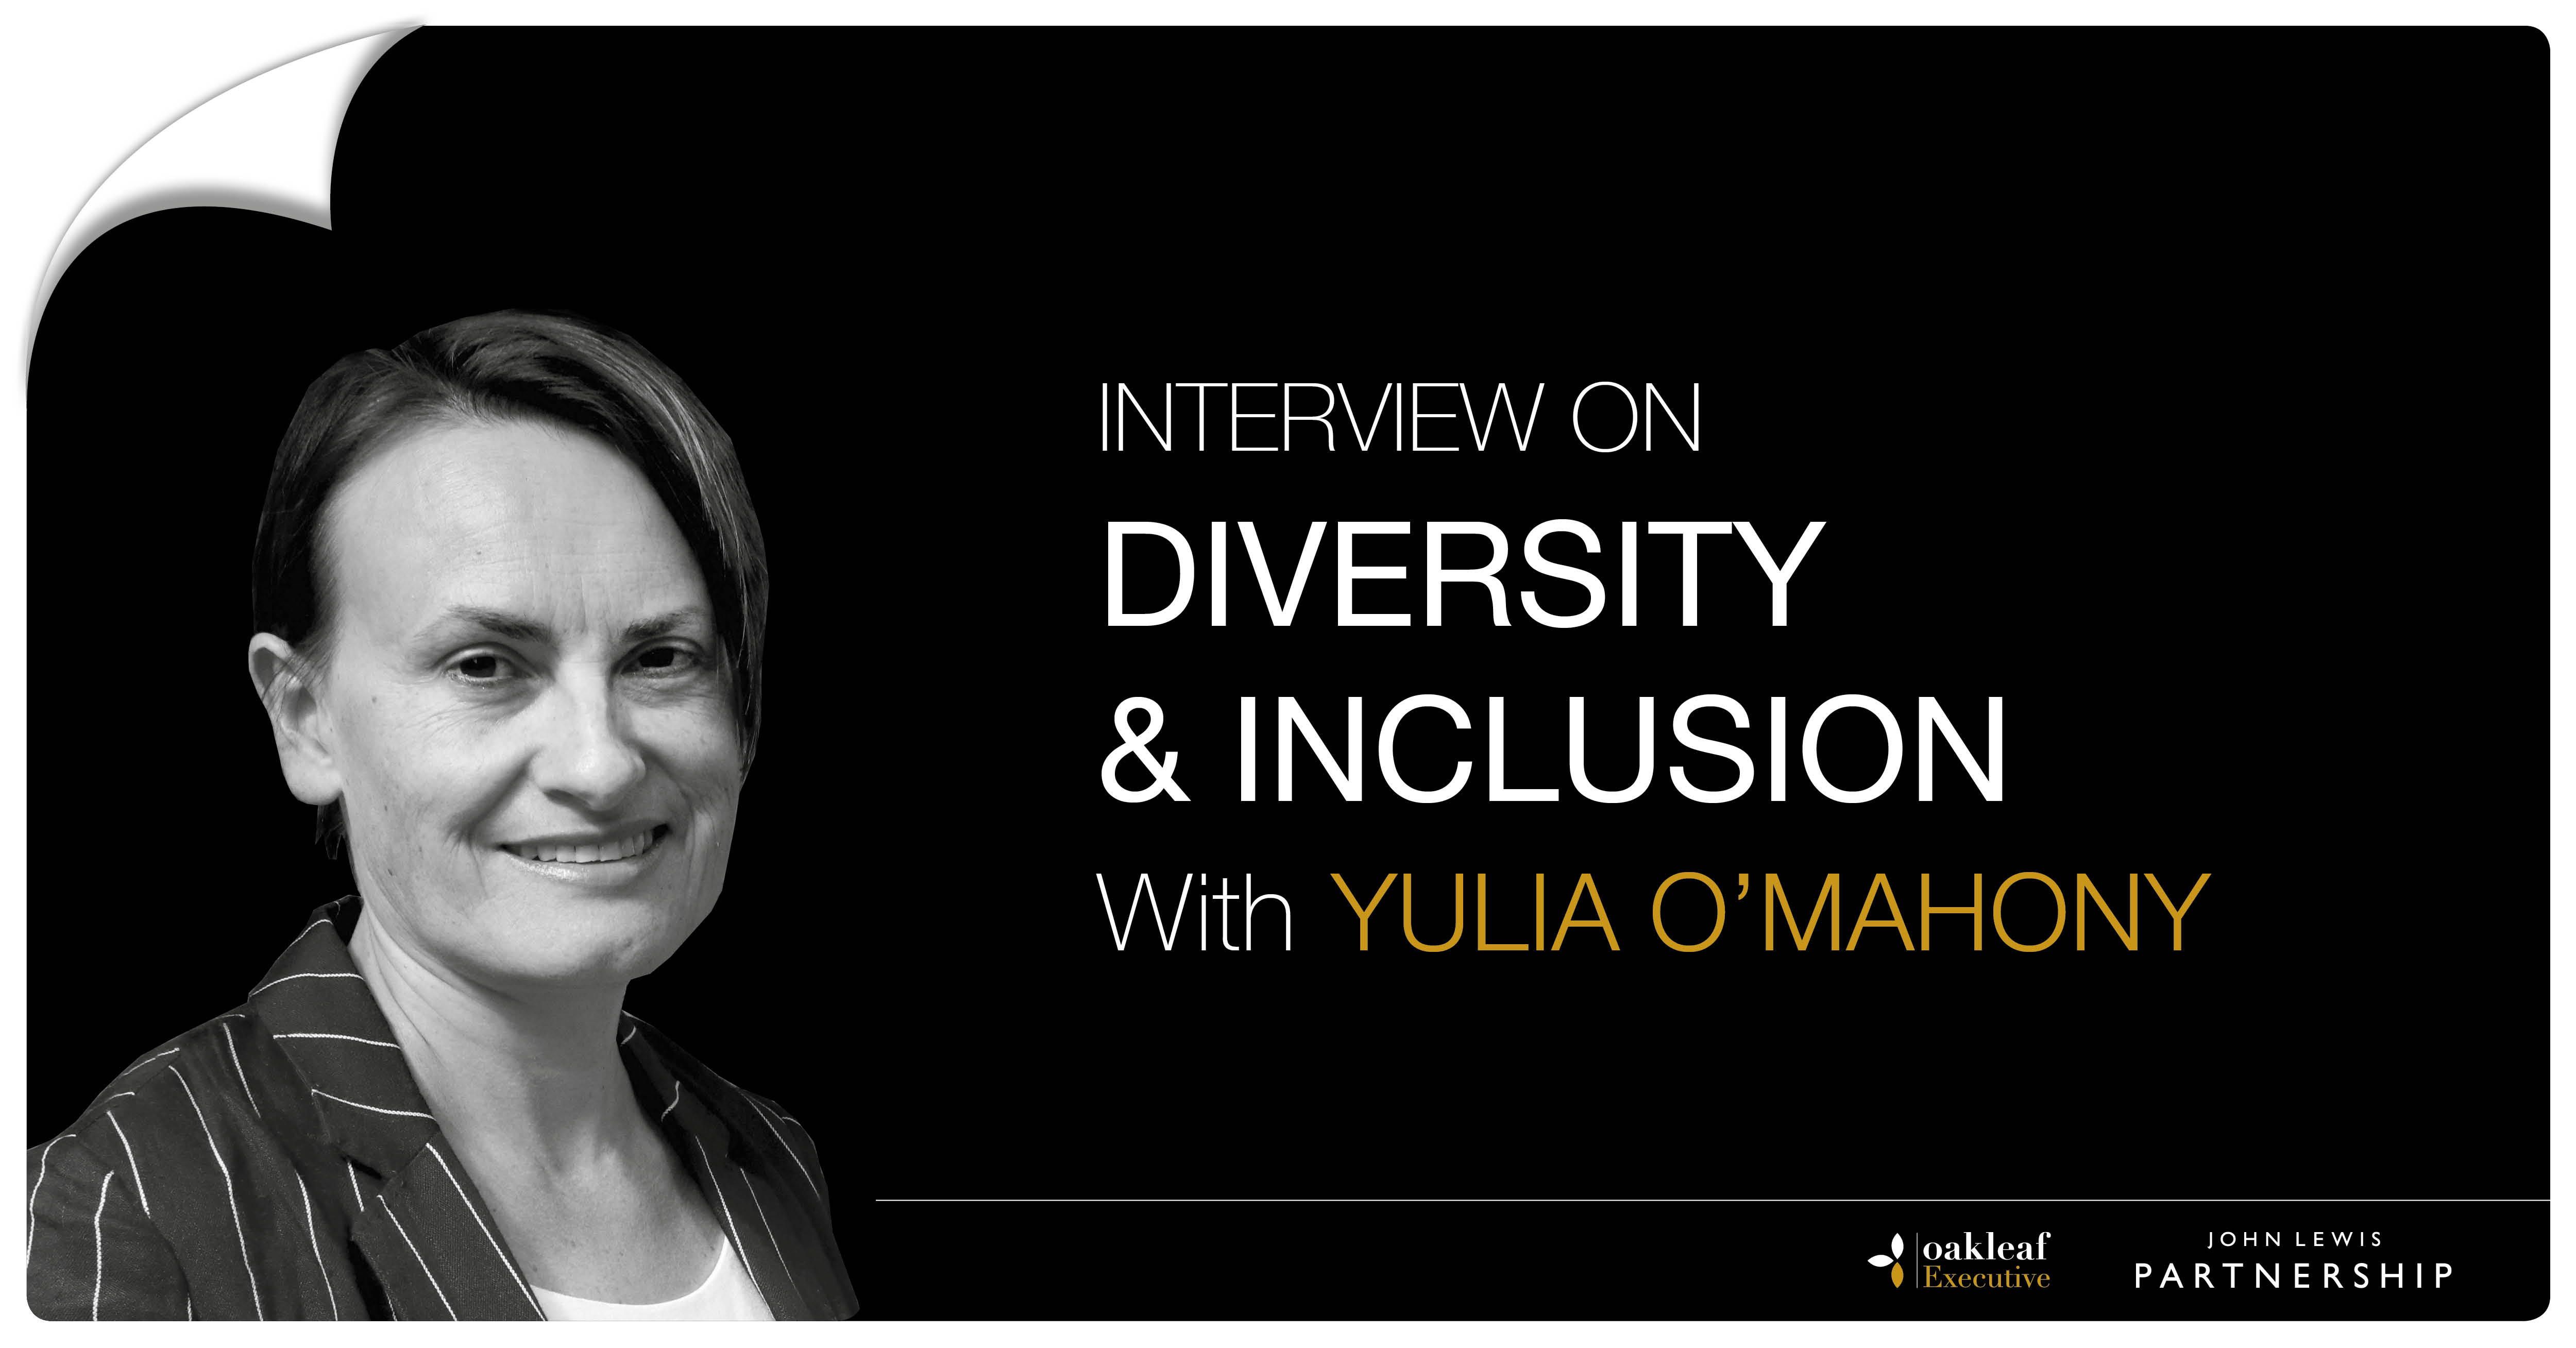 Diversity & Inclusion with Yulia O’Mahony